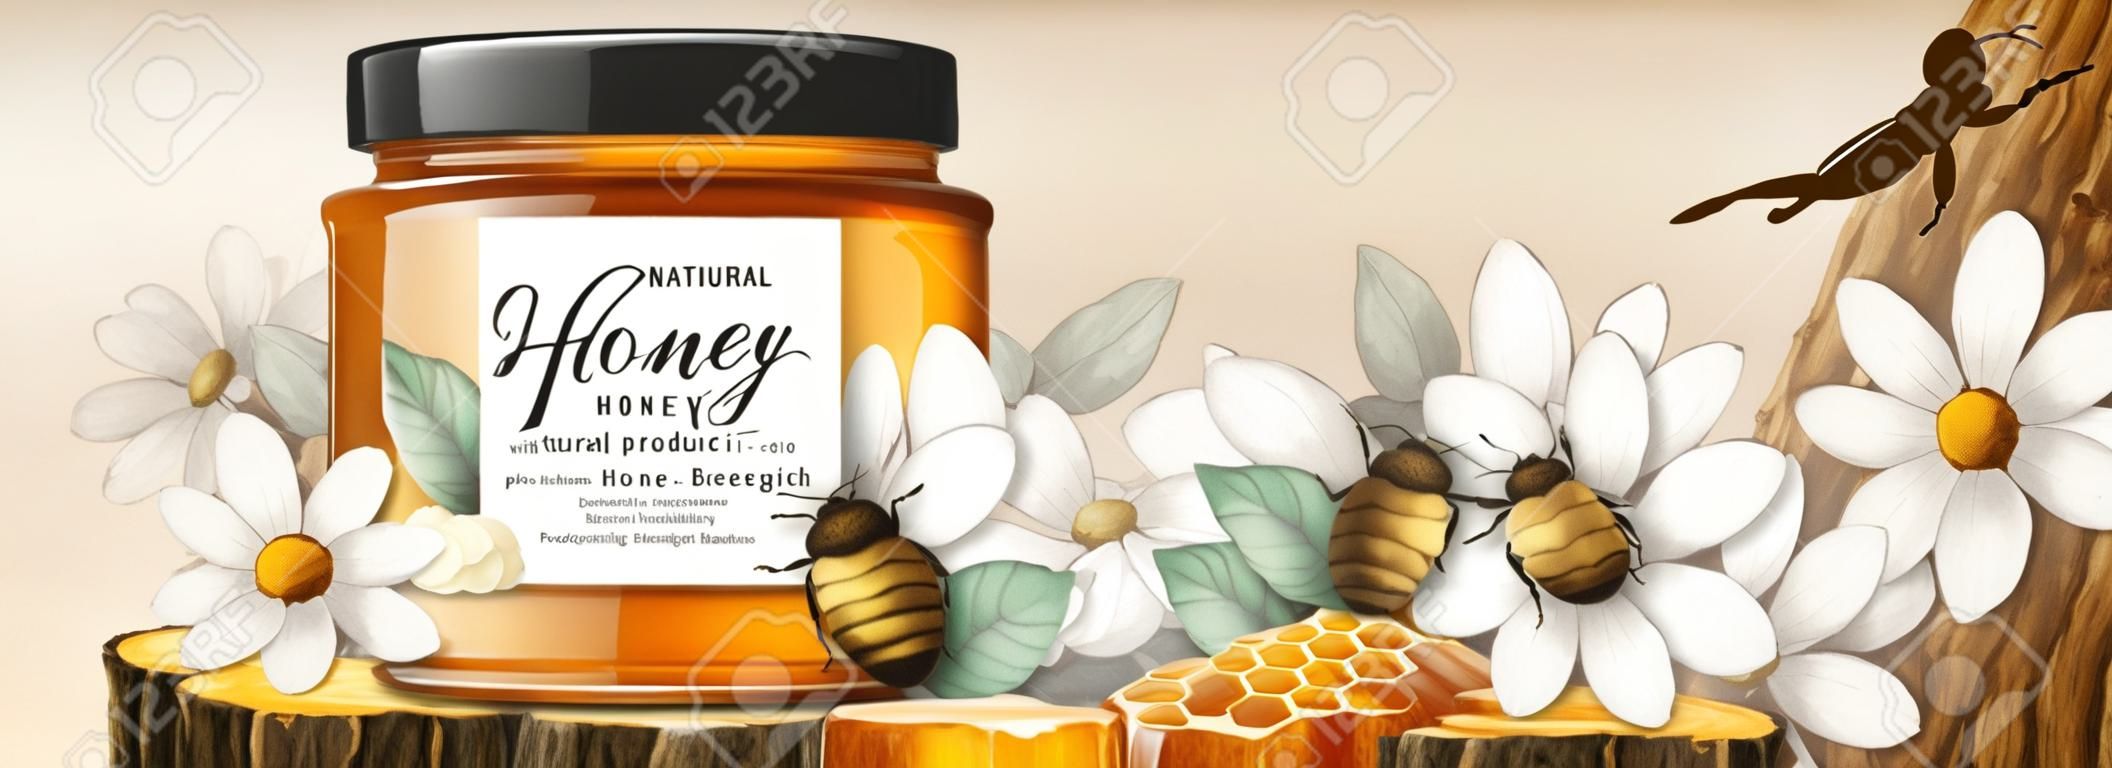 3d 그림에서 나무 줄기 섹션 플랫폼에 벌집이 있는 천연 꿀 제품, 흰색 꽃 목판화 배경